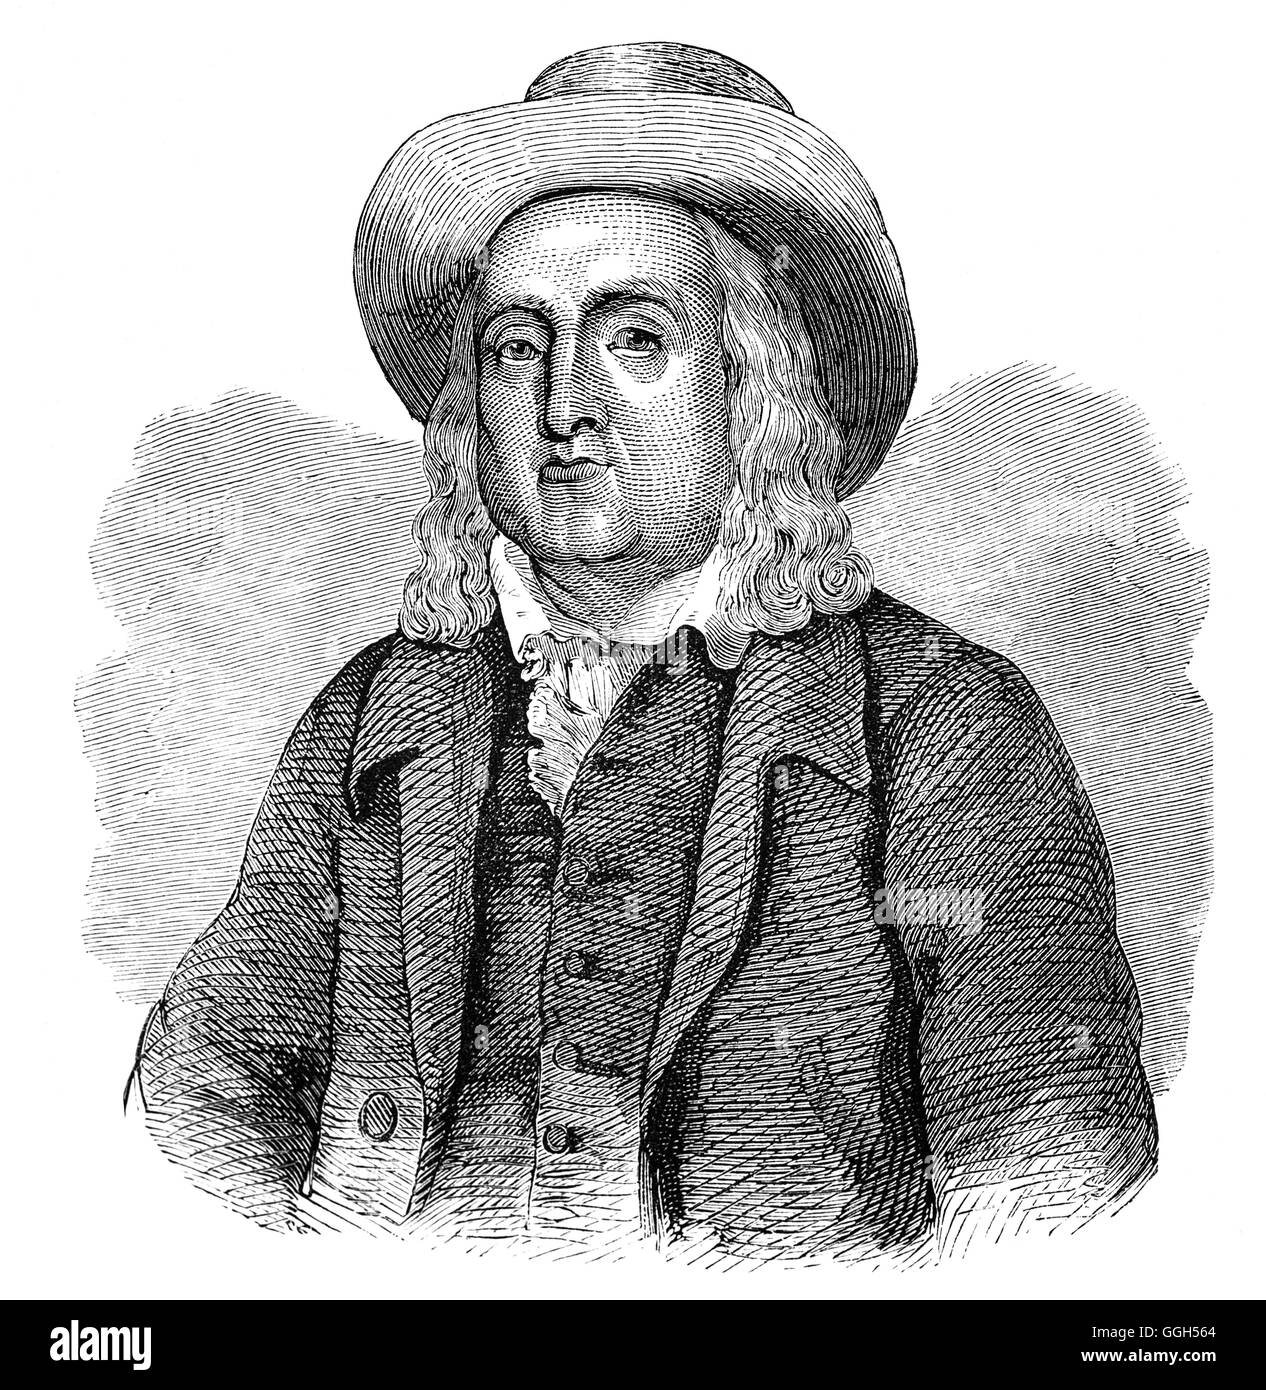 Jeremy Bentham (1747 – 1832) war ein englischer Philosoph, Jurist und Sozialreformer. Er gilt als der Begründer des modernen Utilitarismus und plädierte für individuelle und wirtschaftliche Freiheit, die Trennung von Kirche und Staat, Freiheit der Meinungsäußerung, gleiche Rechte für Frauen, das Recht auf Scheidung und die Entkriminalisierung homosexueller Handlungen, der Abschaffung der Sklaverei, die Todesstrafe und die Abschaffung der körperliche Strafe, einschließlich der Kinder. Er ist auch in als ein früher Verfechter der Rechte der Tiere bekannt geworden. Stockfoto